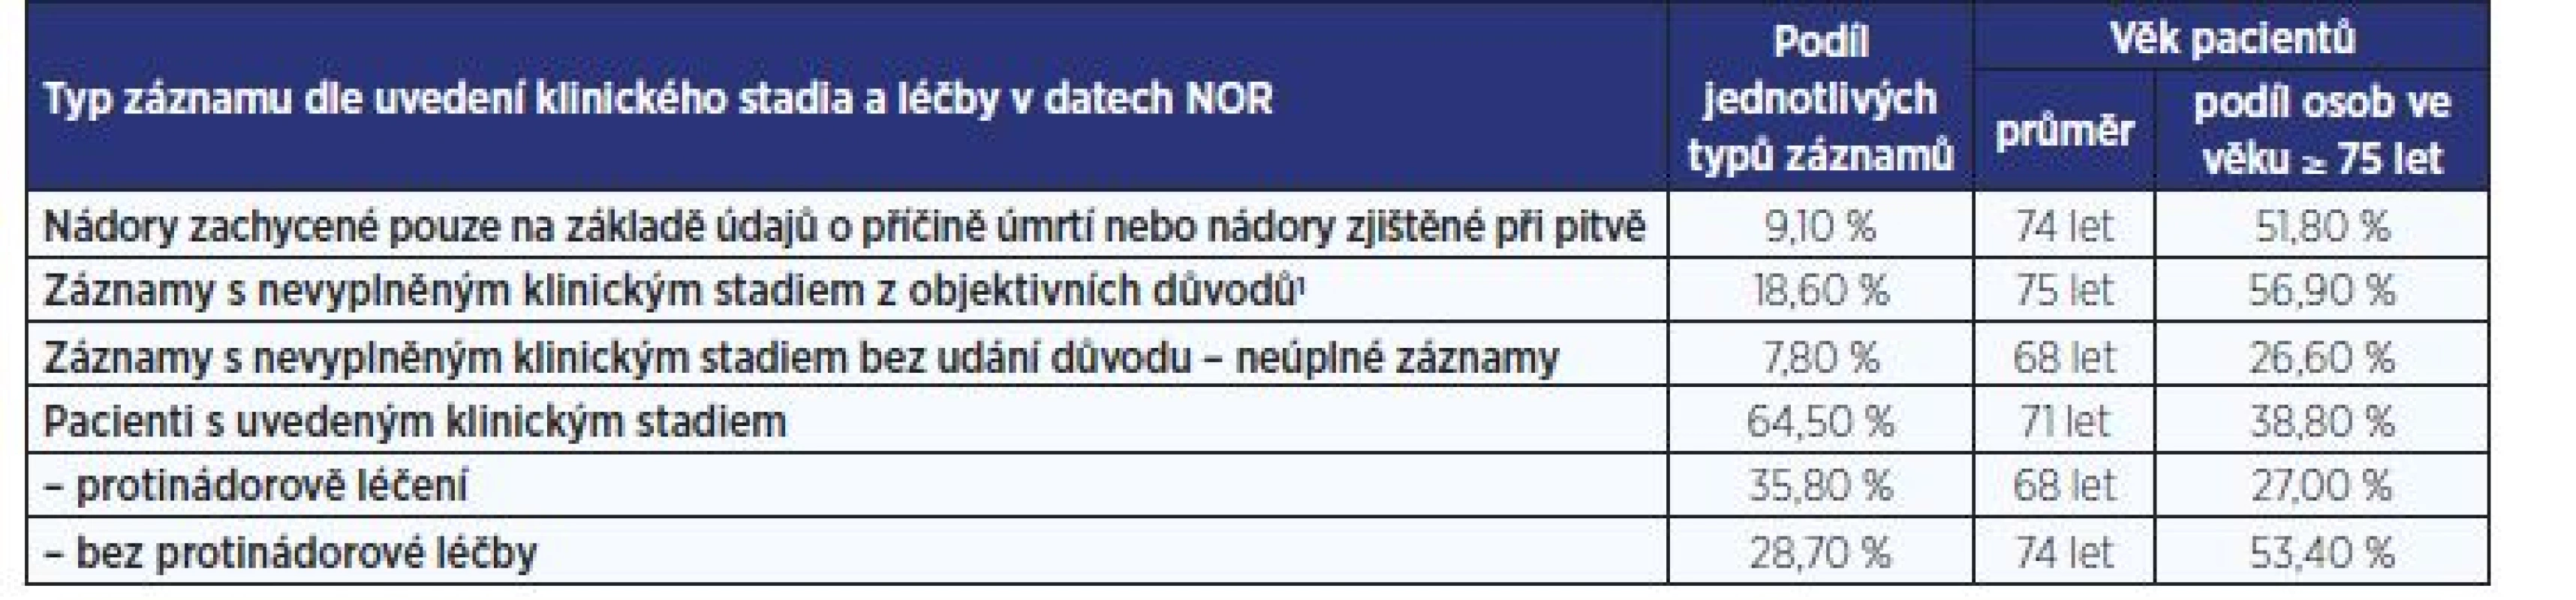 Struktura a kvalita záznamů NOR o zhoubných novotvarech žlučníku a žlučových cest<br>
(diagnózy C22.1 a C23–C24 za období 2007–2016; 10 463 záznamů)